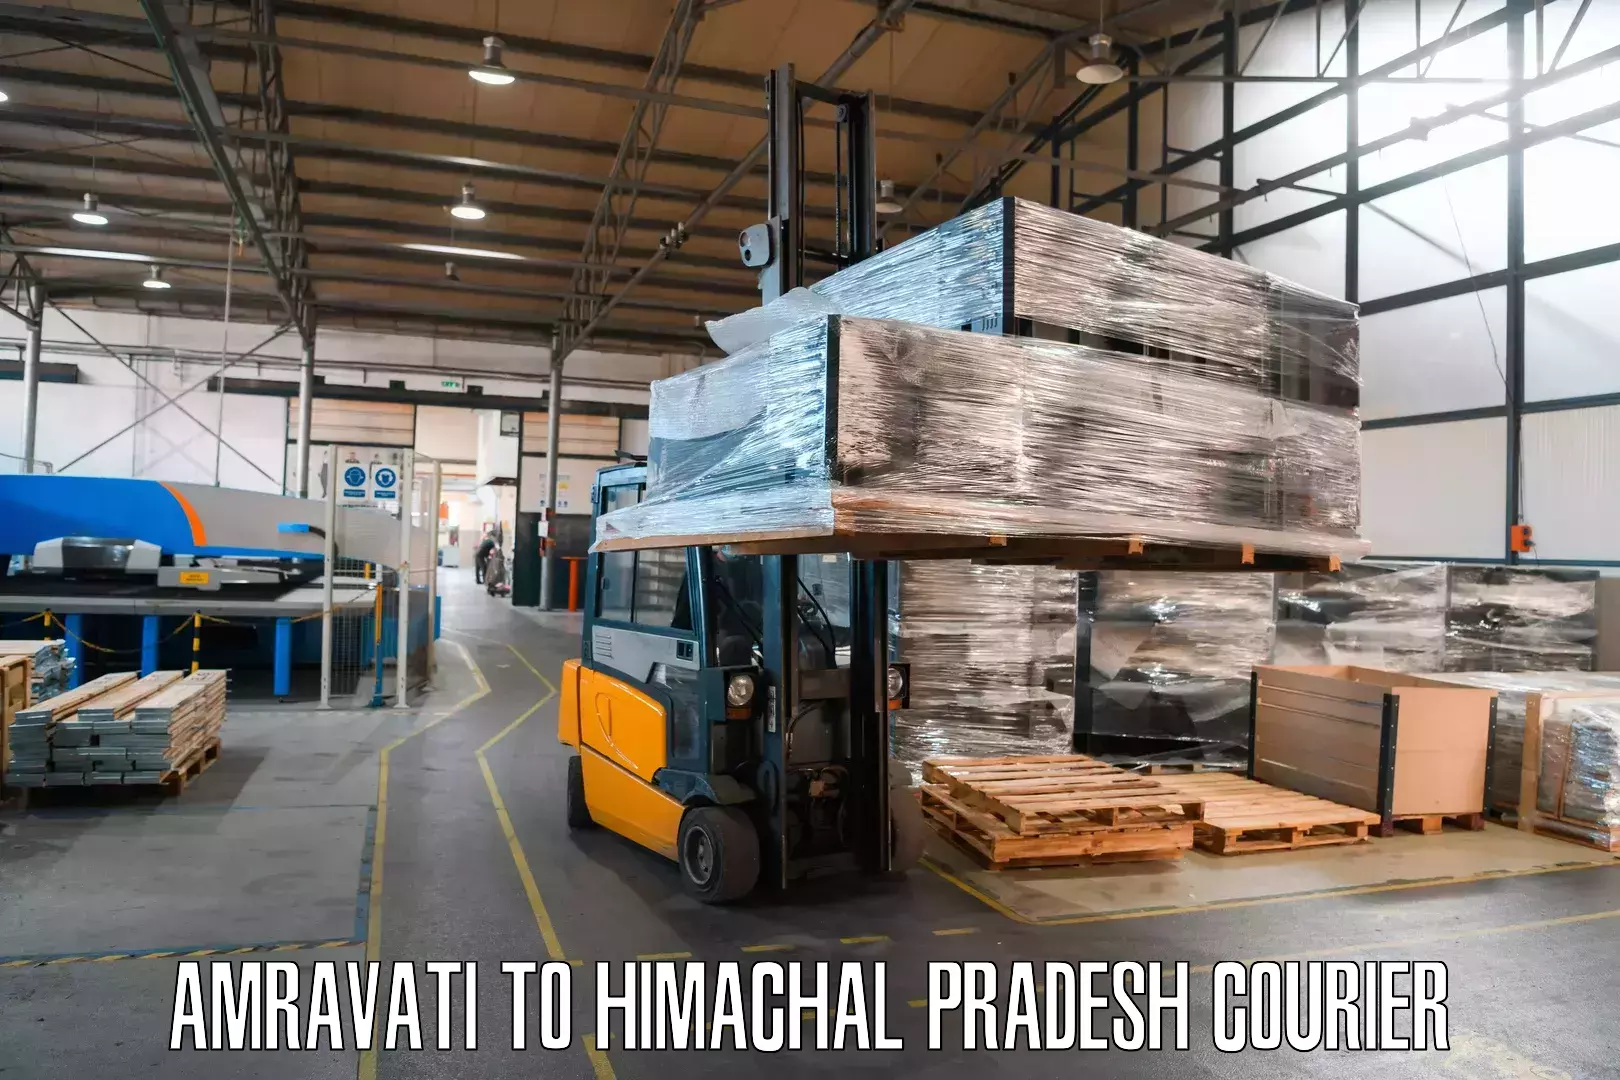 Flexible parcel services Amravati to Bharmour